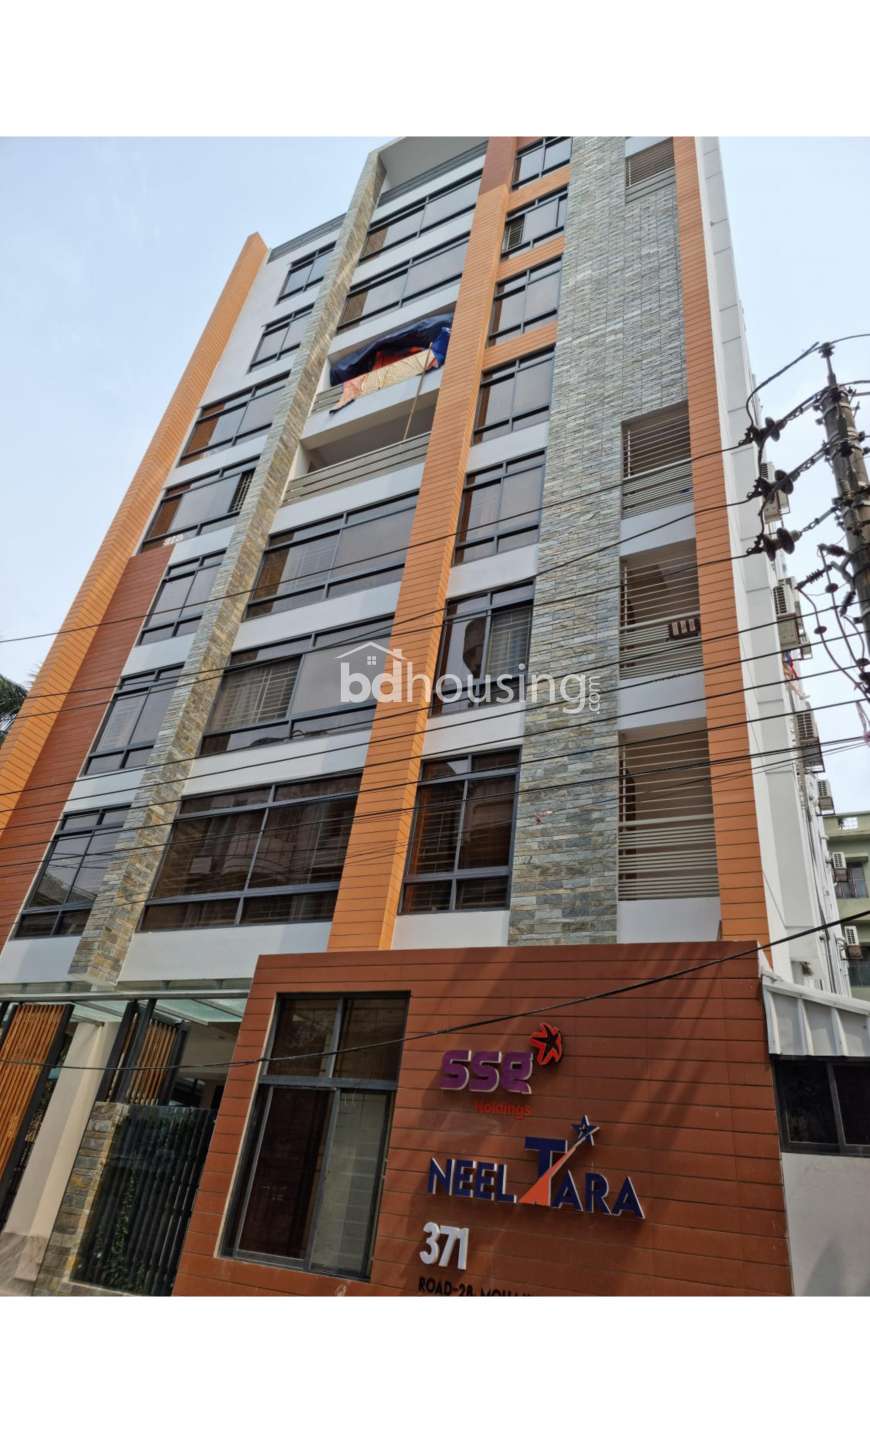 SSG Neel Tara, Apartment/Flats at Mohakhali DOHS